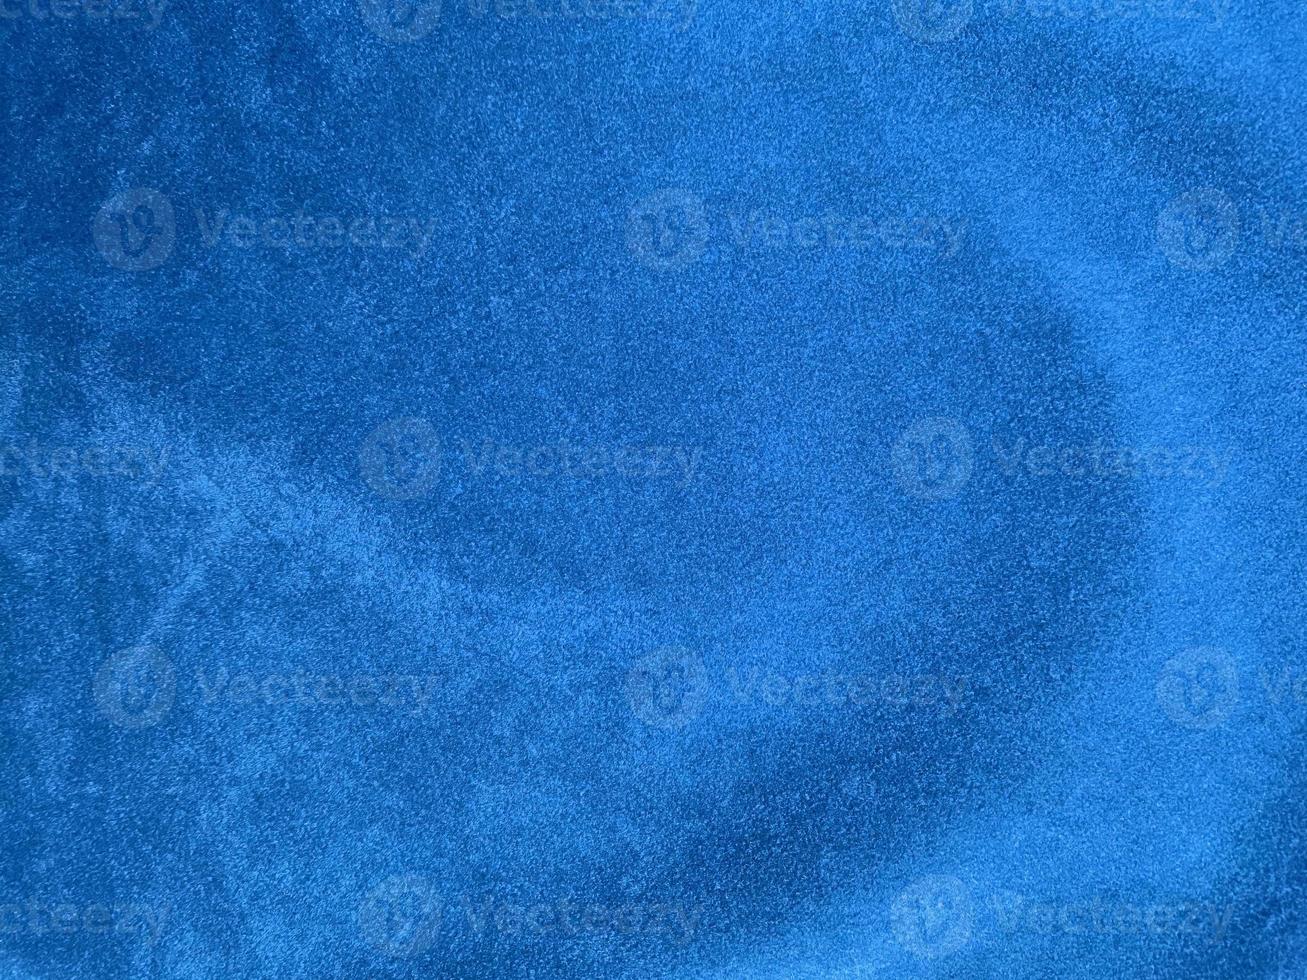 textura de tela de terciopelo azul claro utilizada como fondo. fondo de tela azul claro vacío de material textil suave y liso. hay espacio para el texto. foto